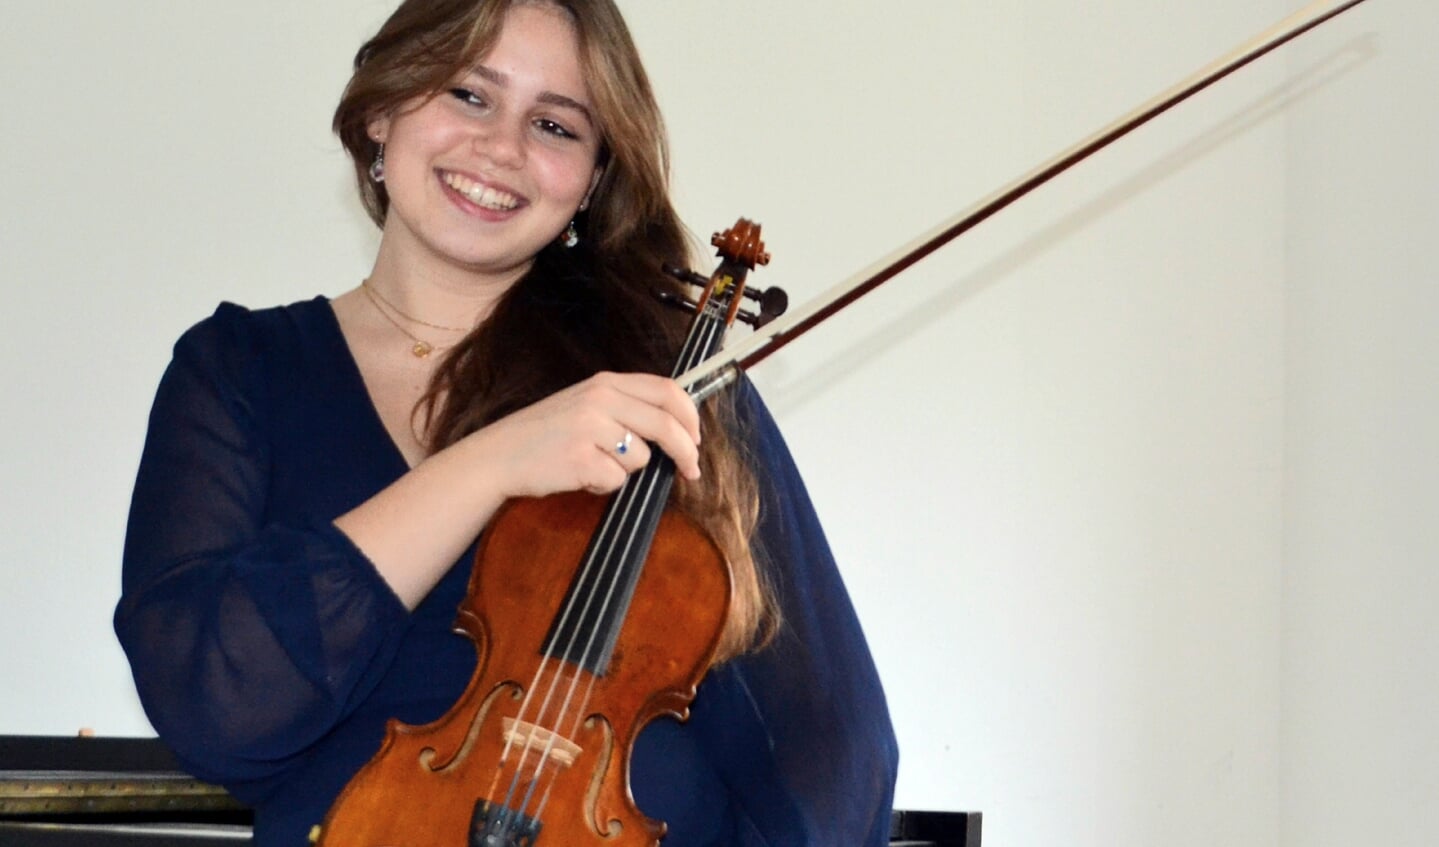 Rebekka Moosmann stammt aus einer musikalischen Familie. Ihr Vater ist Violinist im Sønderjyllands Symfoniorkester.